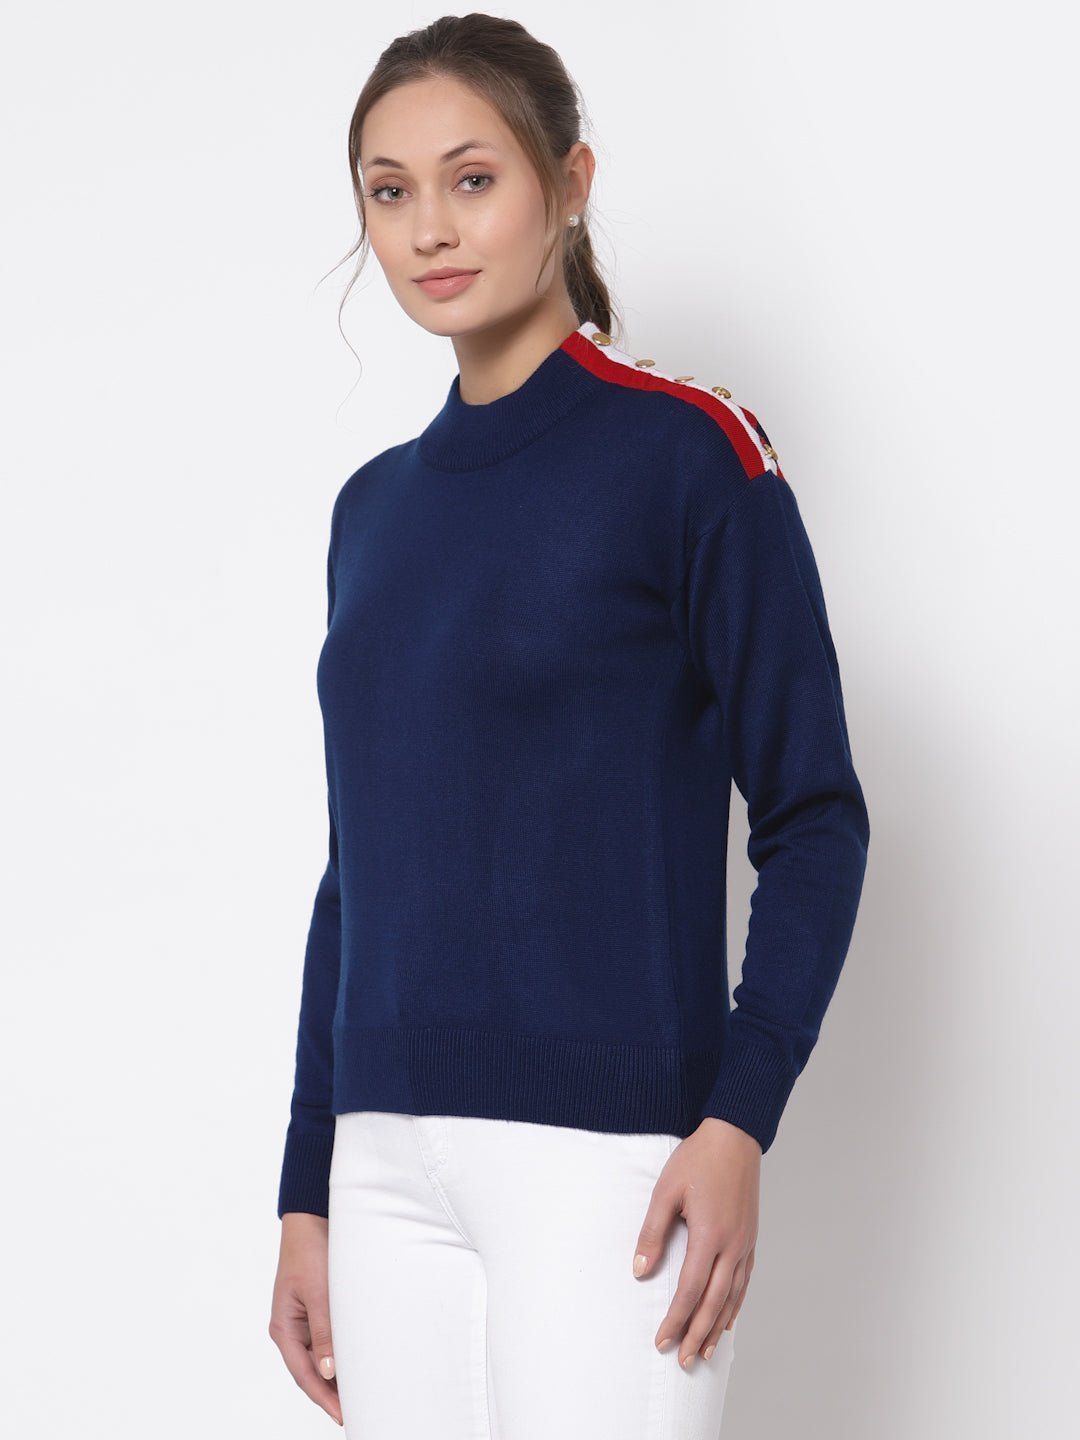 Navy Blue Solid Round Neck Sweater - clubyork